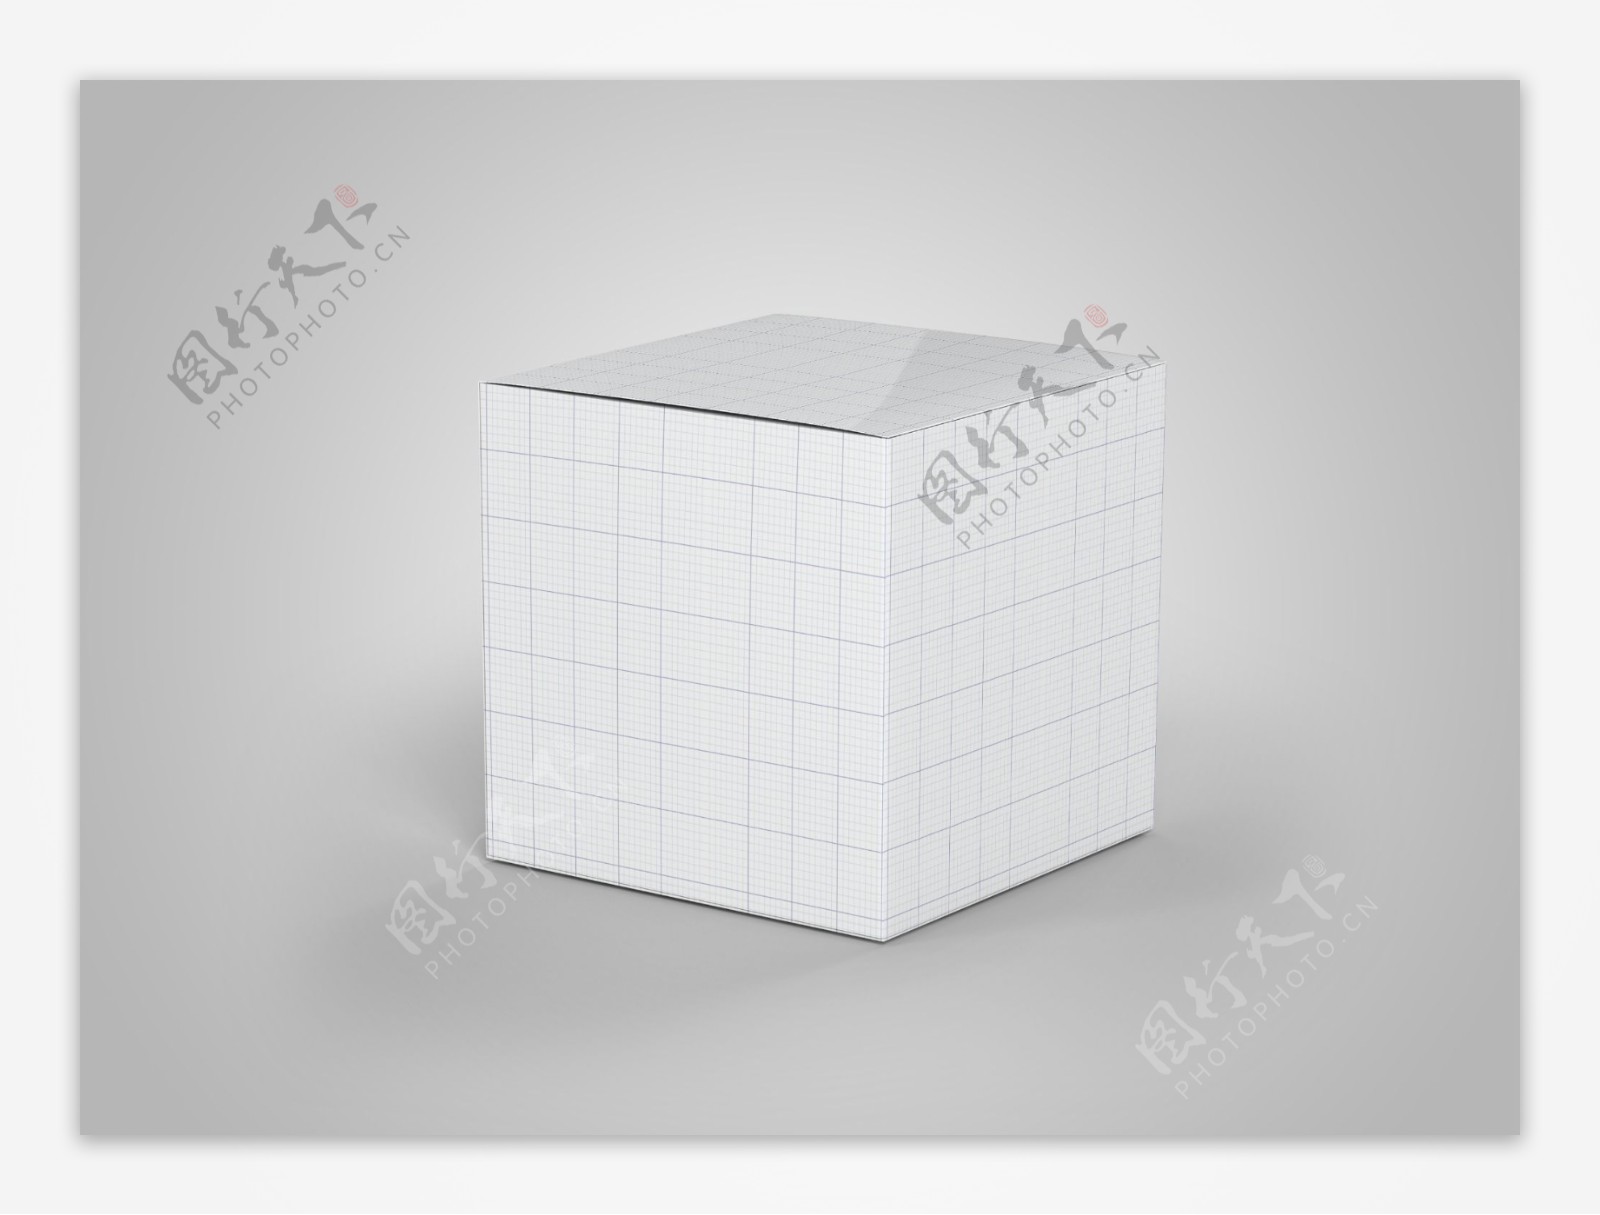 3C电子产品纸盒包装效果图样机